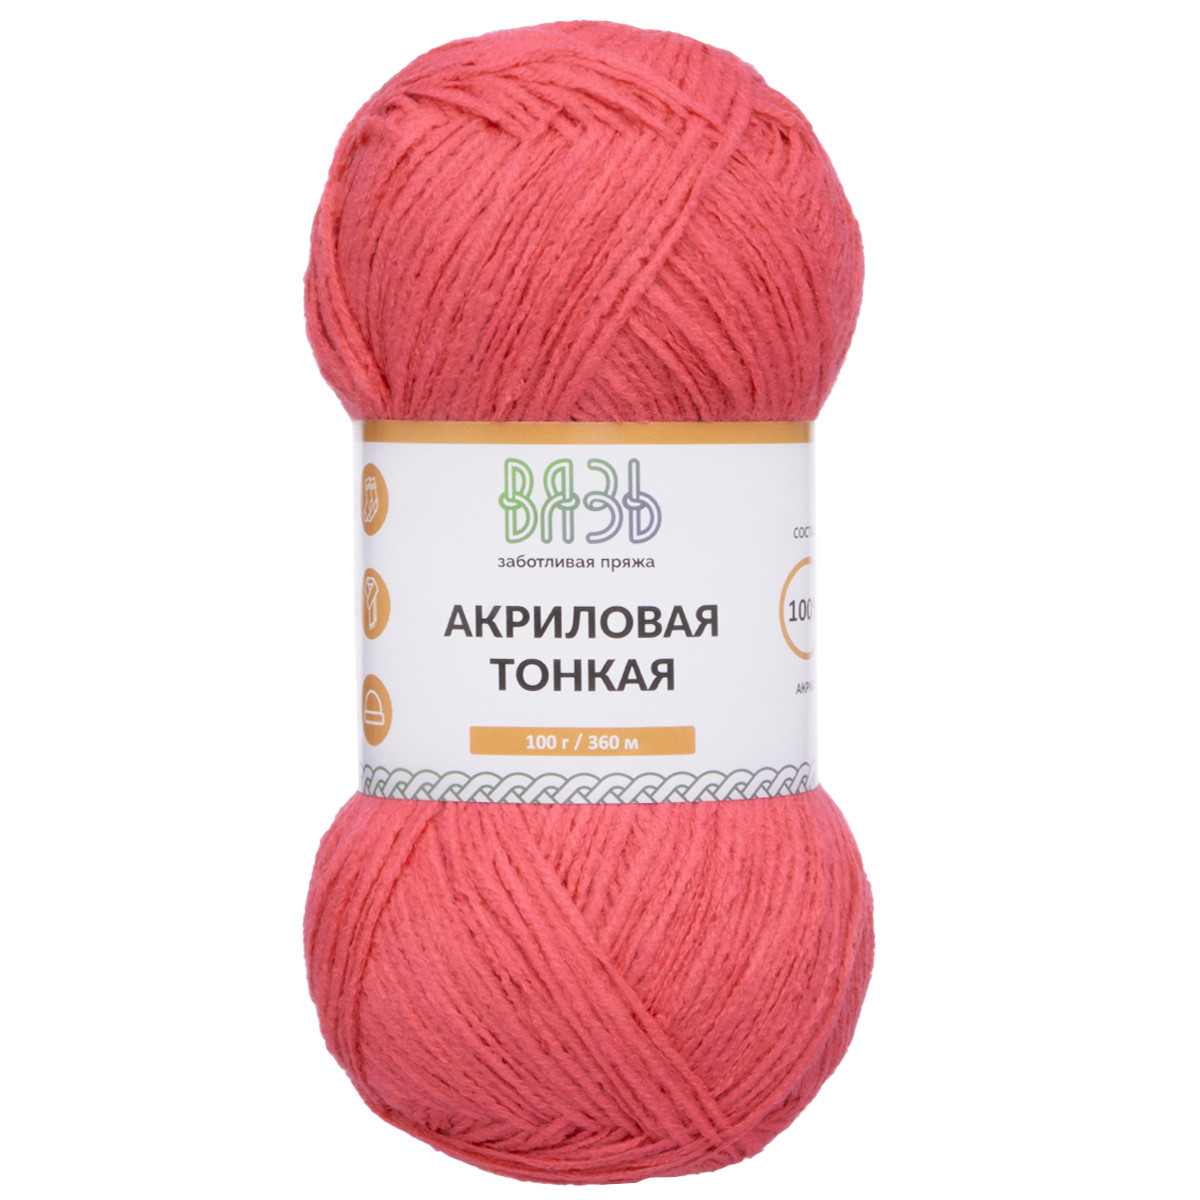 Пряжа для вязания Вязь Акриловая тонкая, 100г, 360м (100% акрил) (123 розовый), 3 мотка